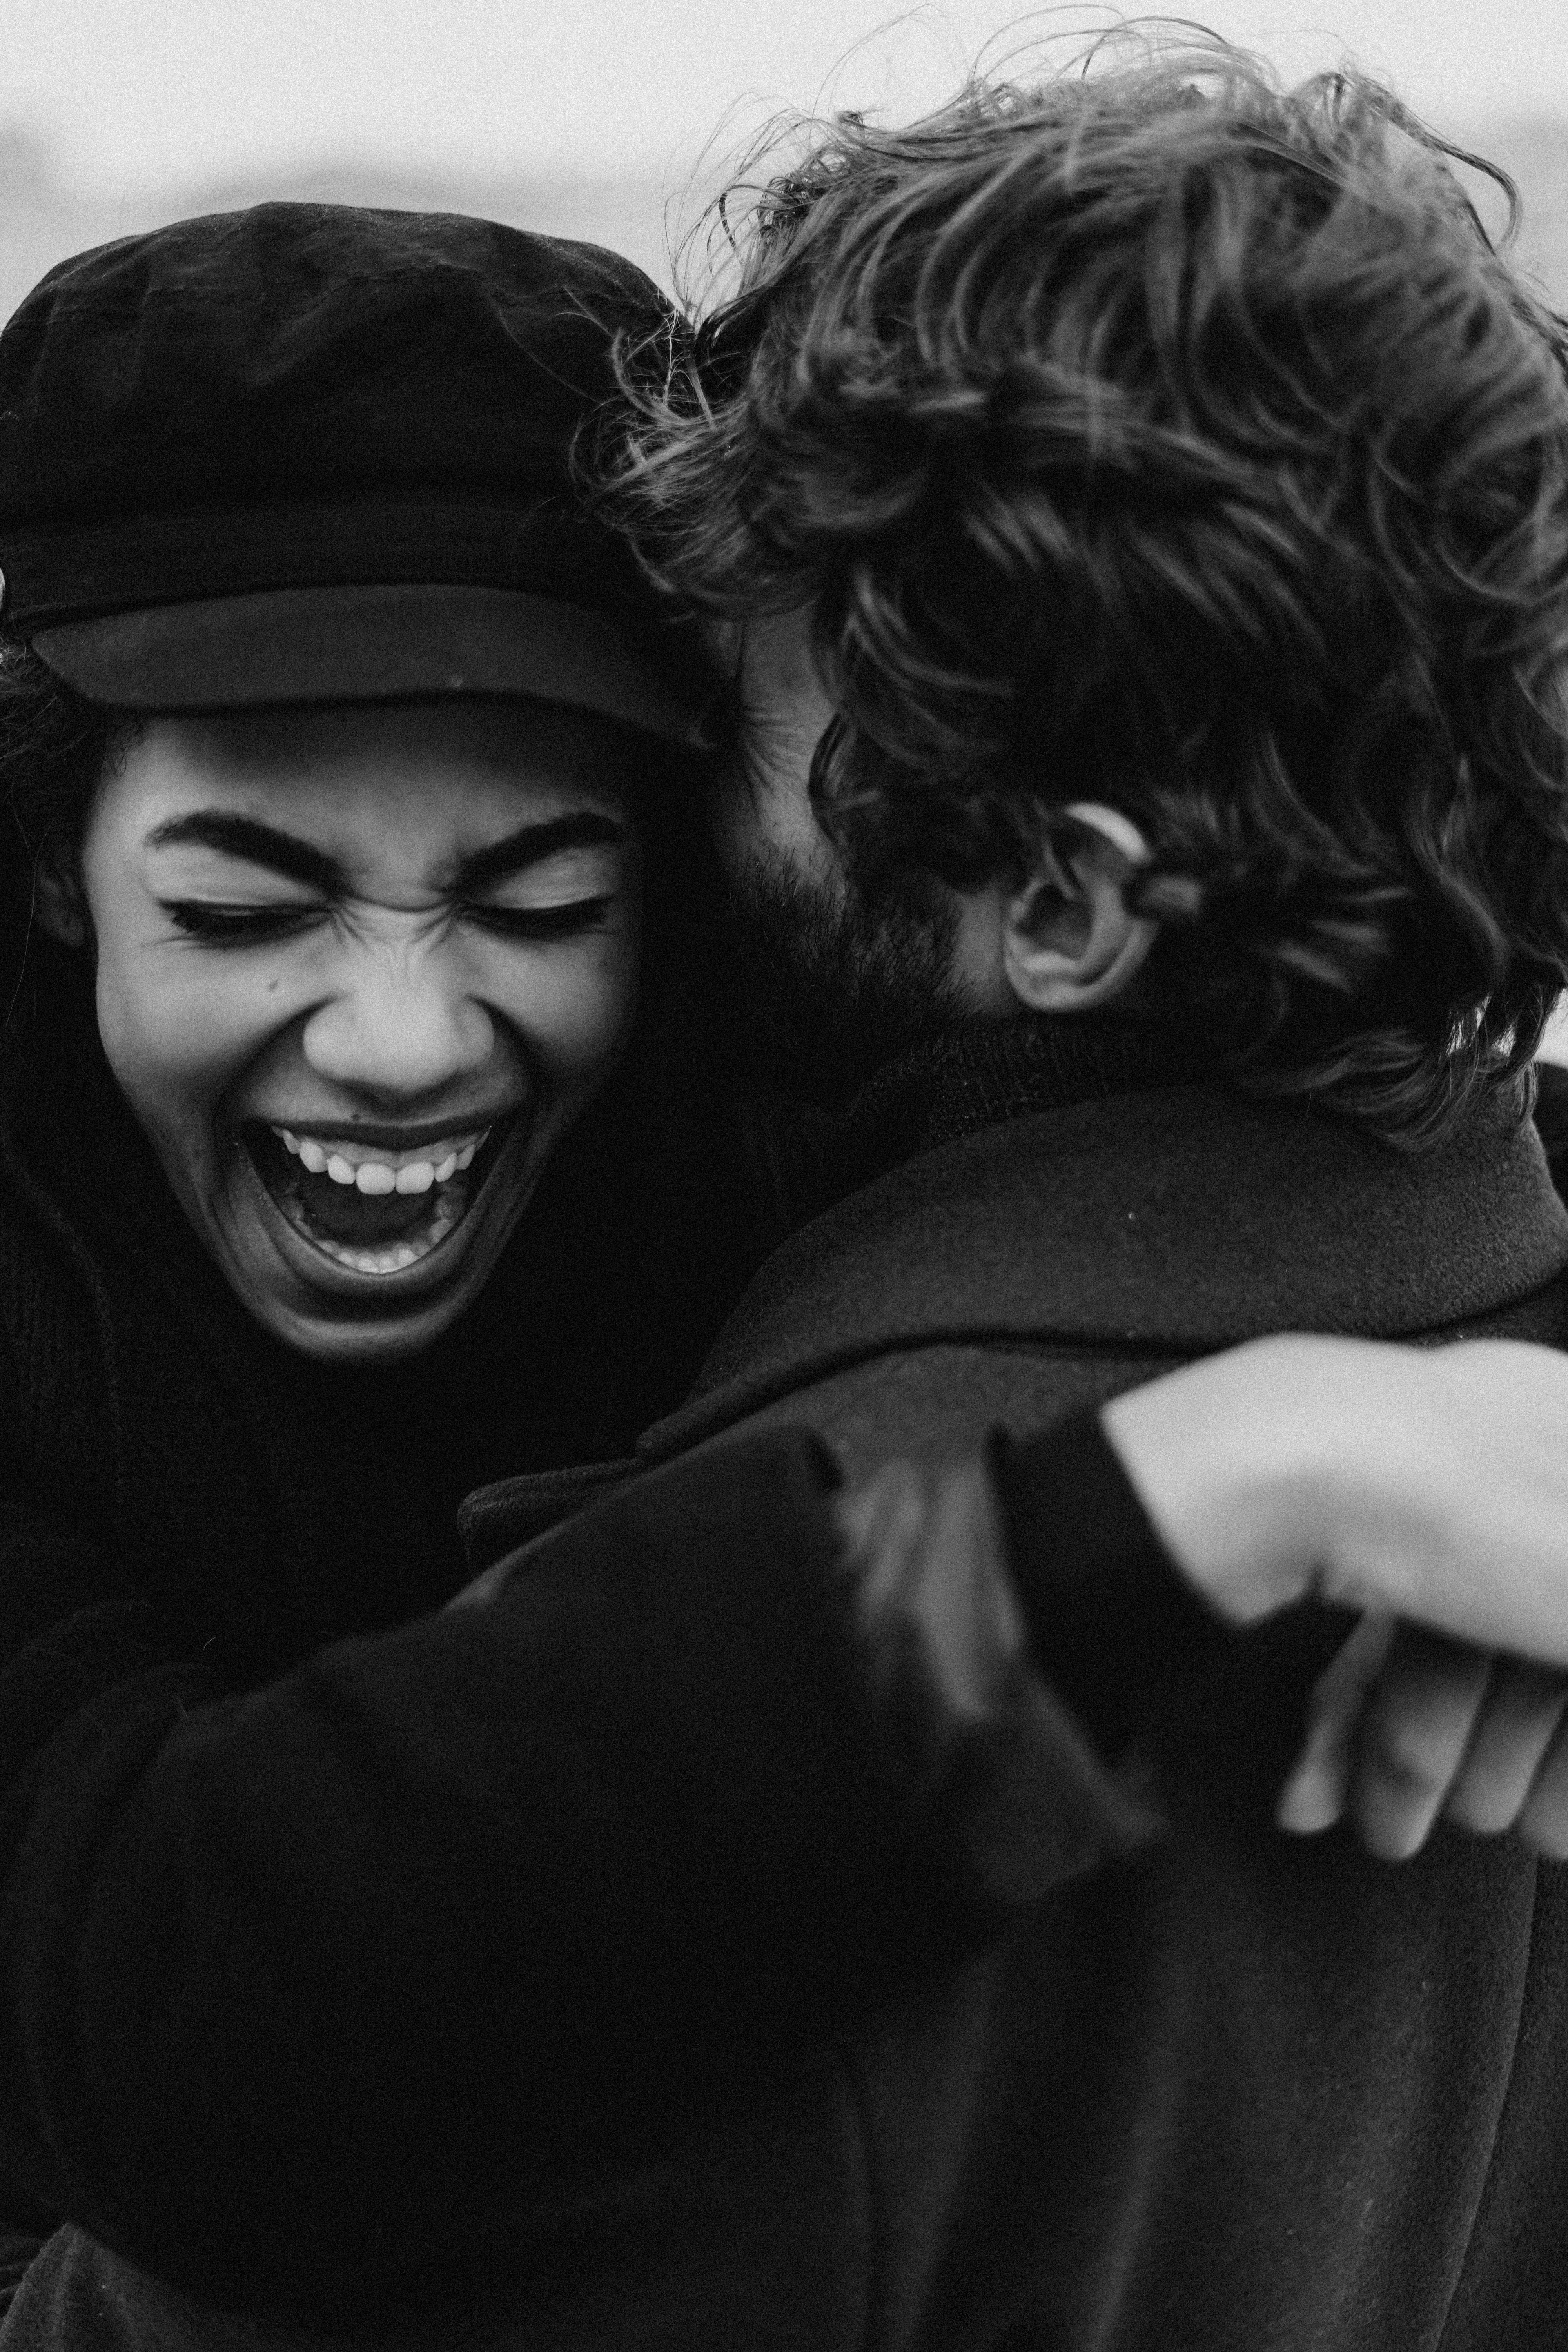 Una pareja abrazándose | Fuente: Pexels